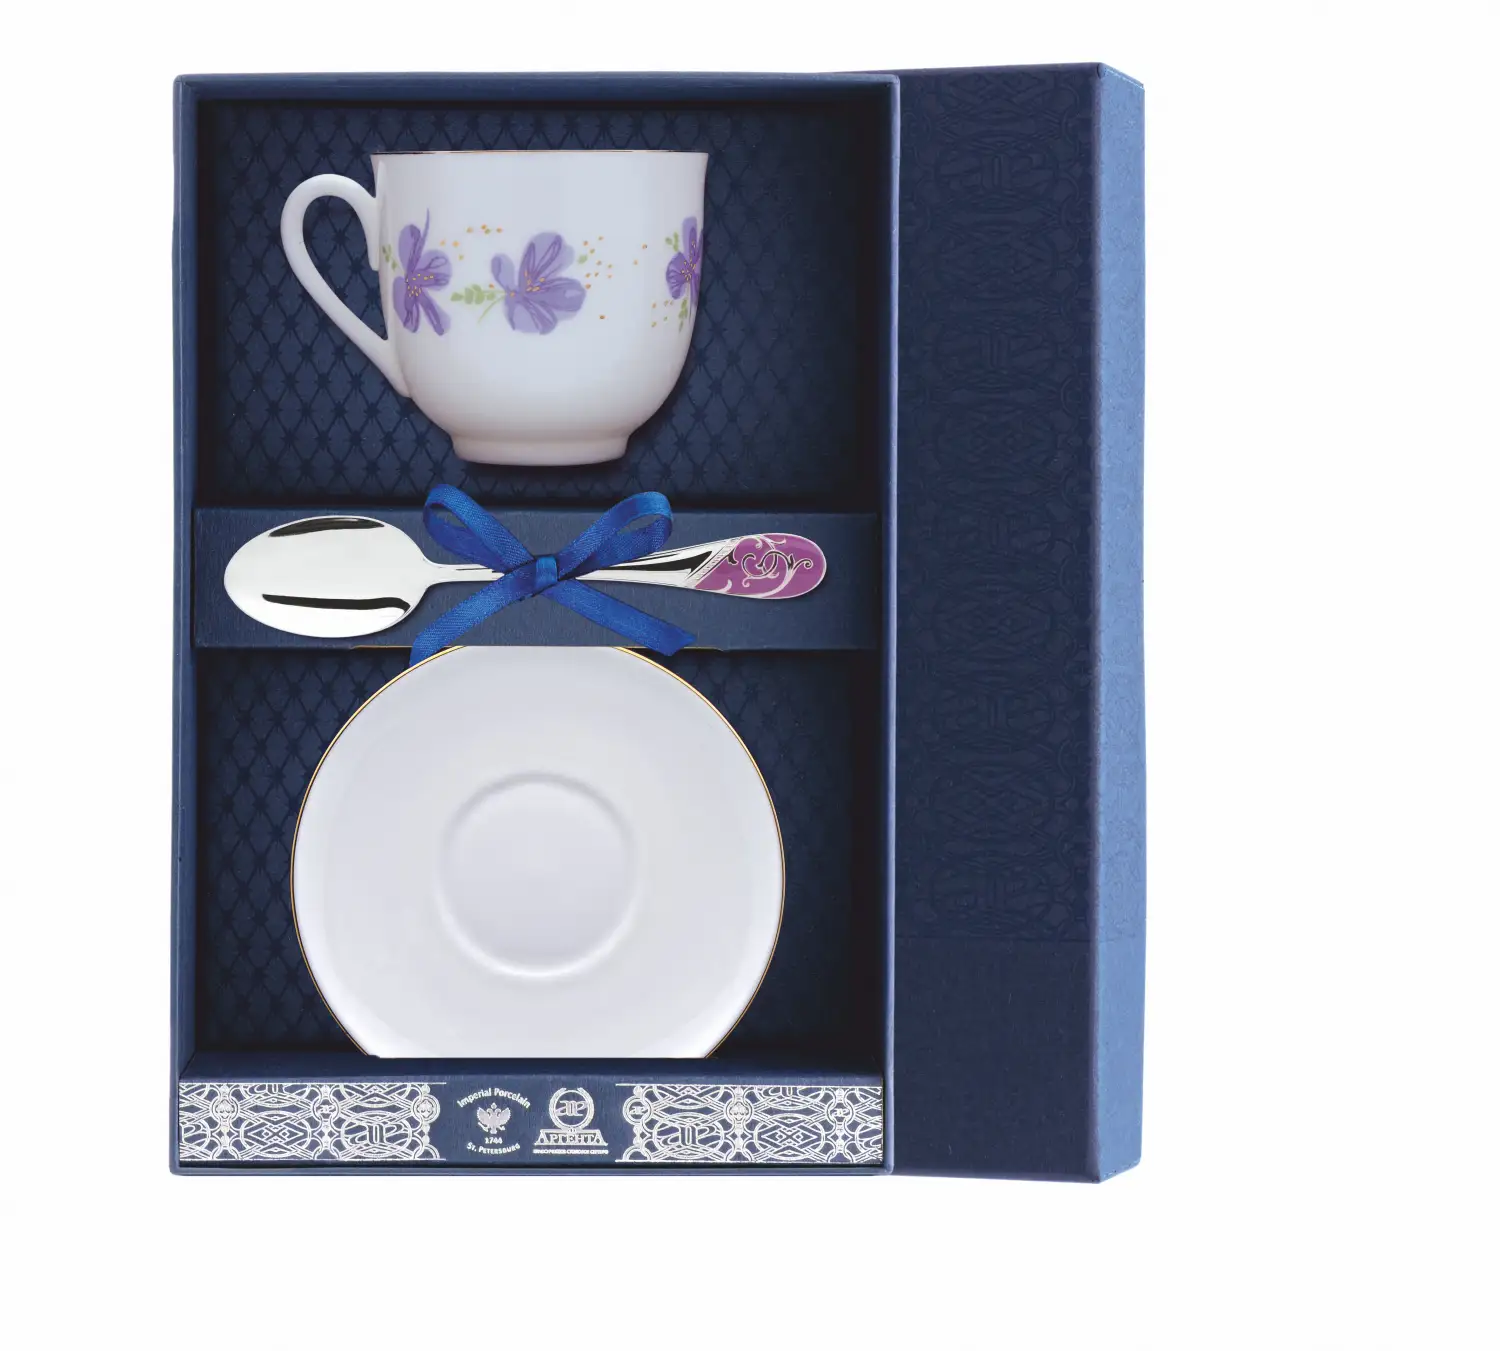 Набор чайный Ландыш - Сиреневые цветы: блюдце, ложка, чашка (Серебро 925) набор чайный ландыш желтые цветы ложка рамка для фото чашка серебро 925